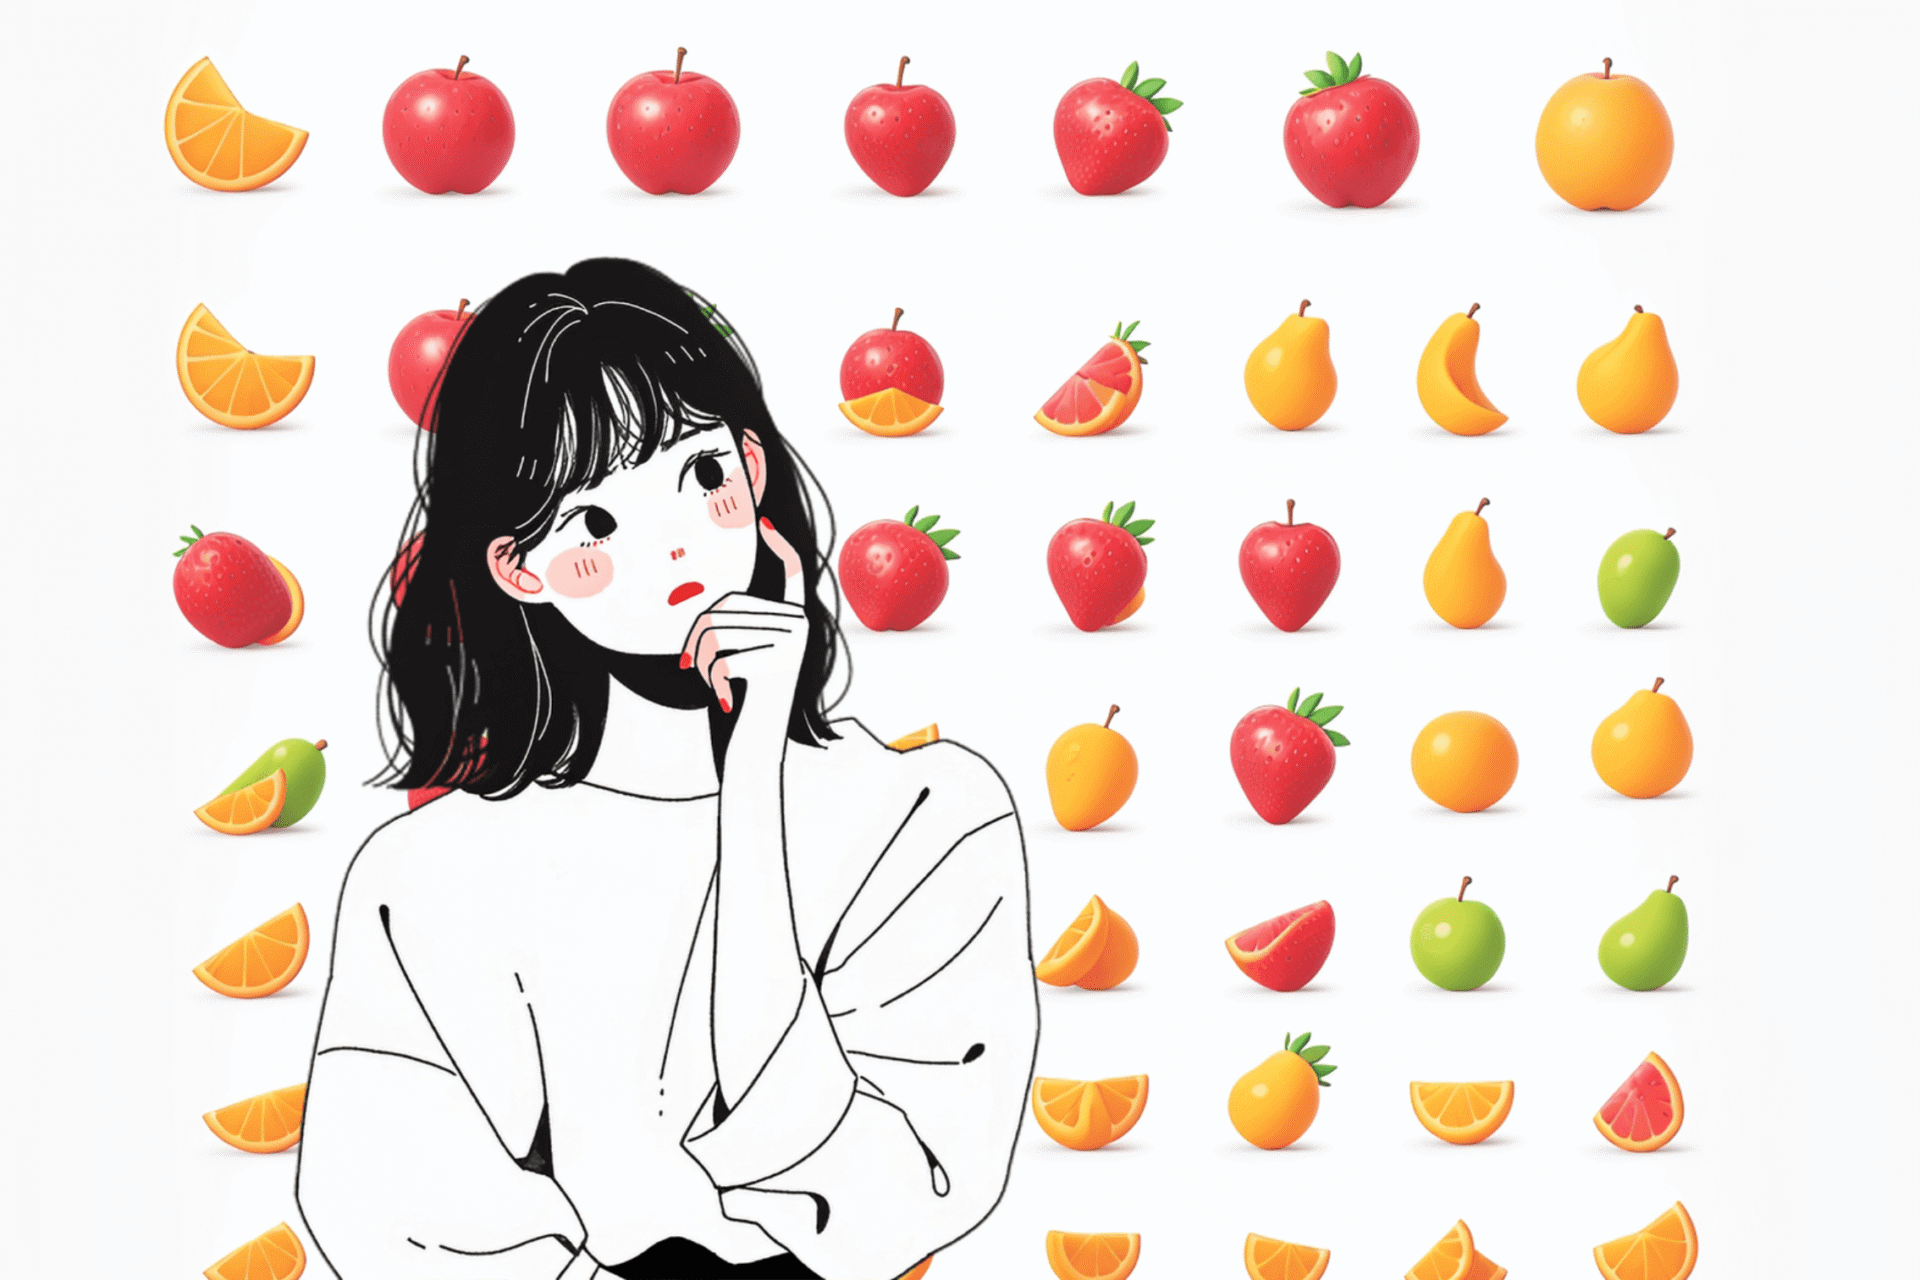 【日韓でトマト論争が勃発】野菜かフルーツかどっち？